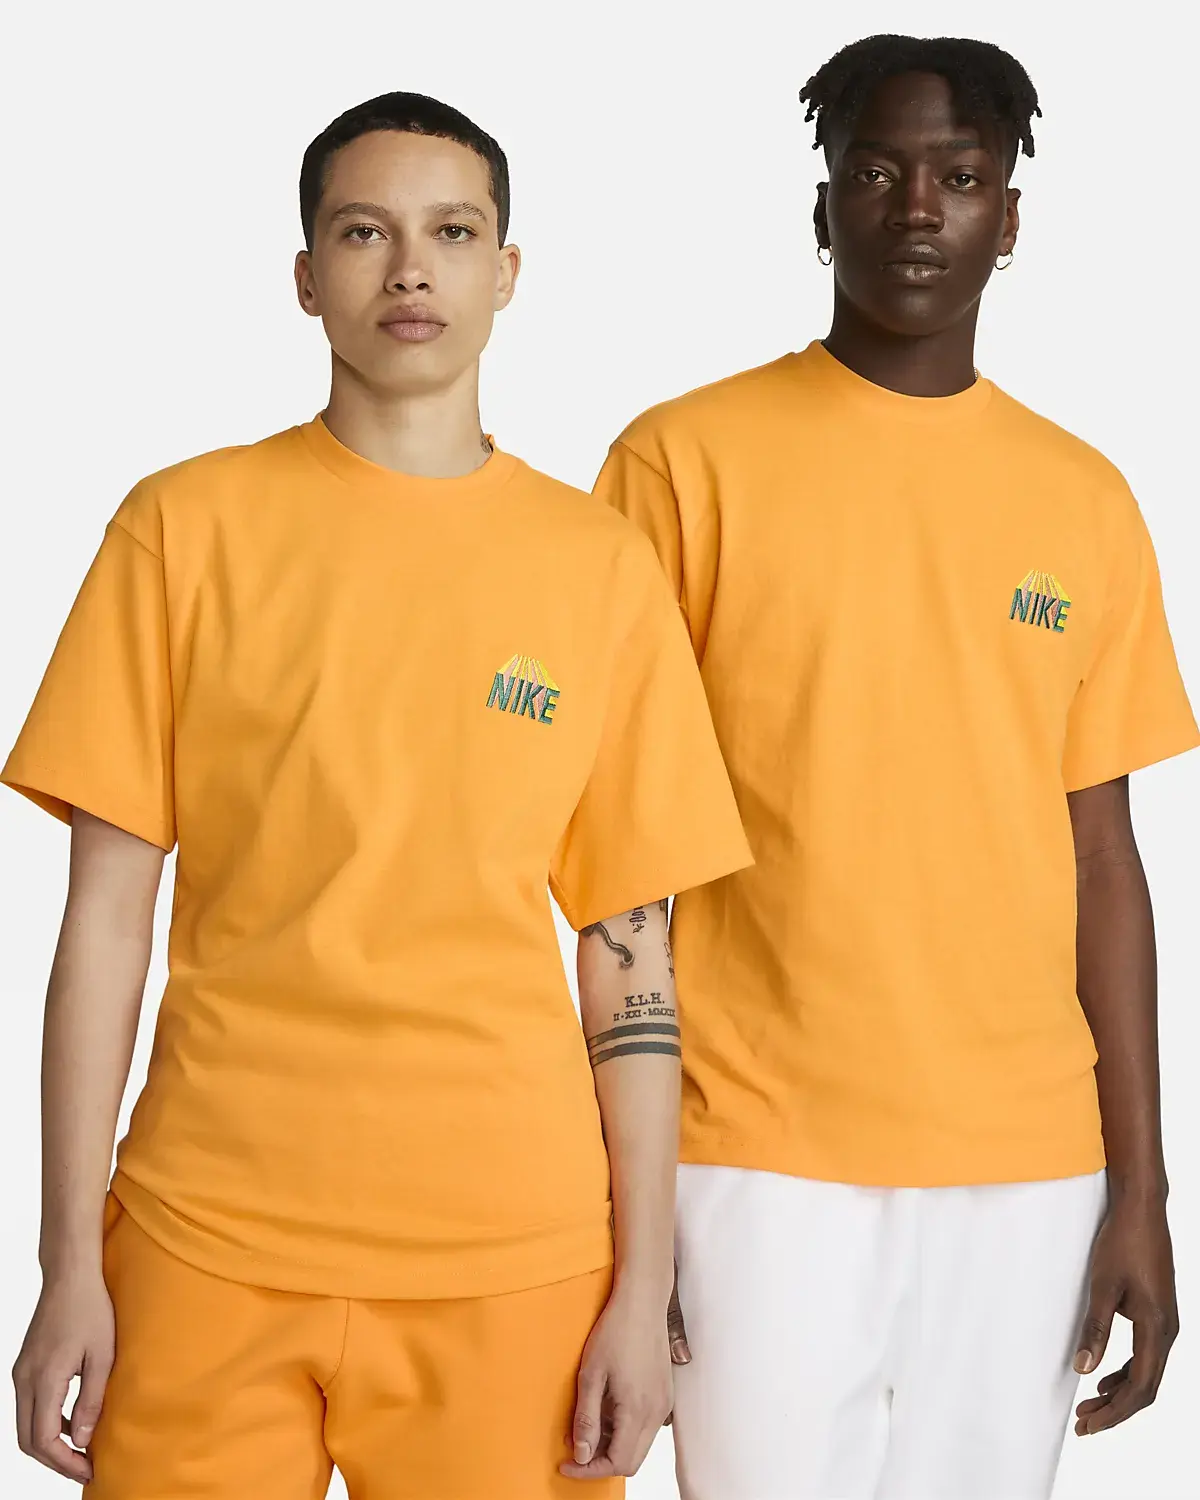 Nike T-shirt. 1